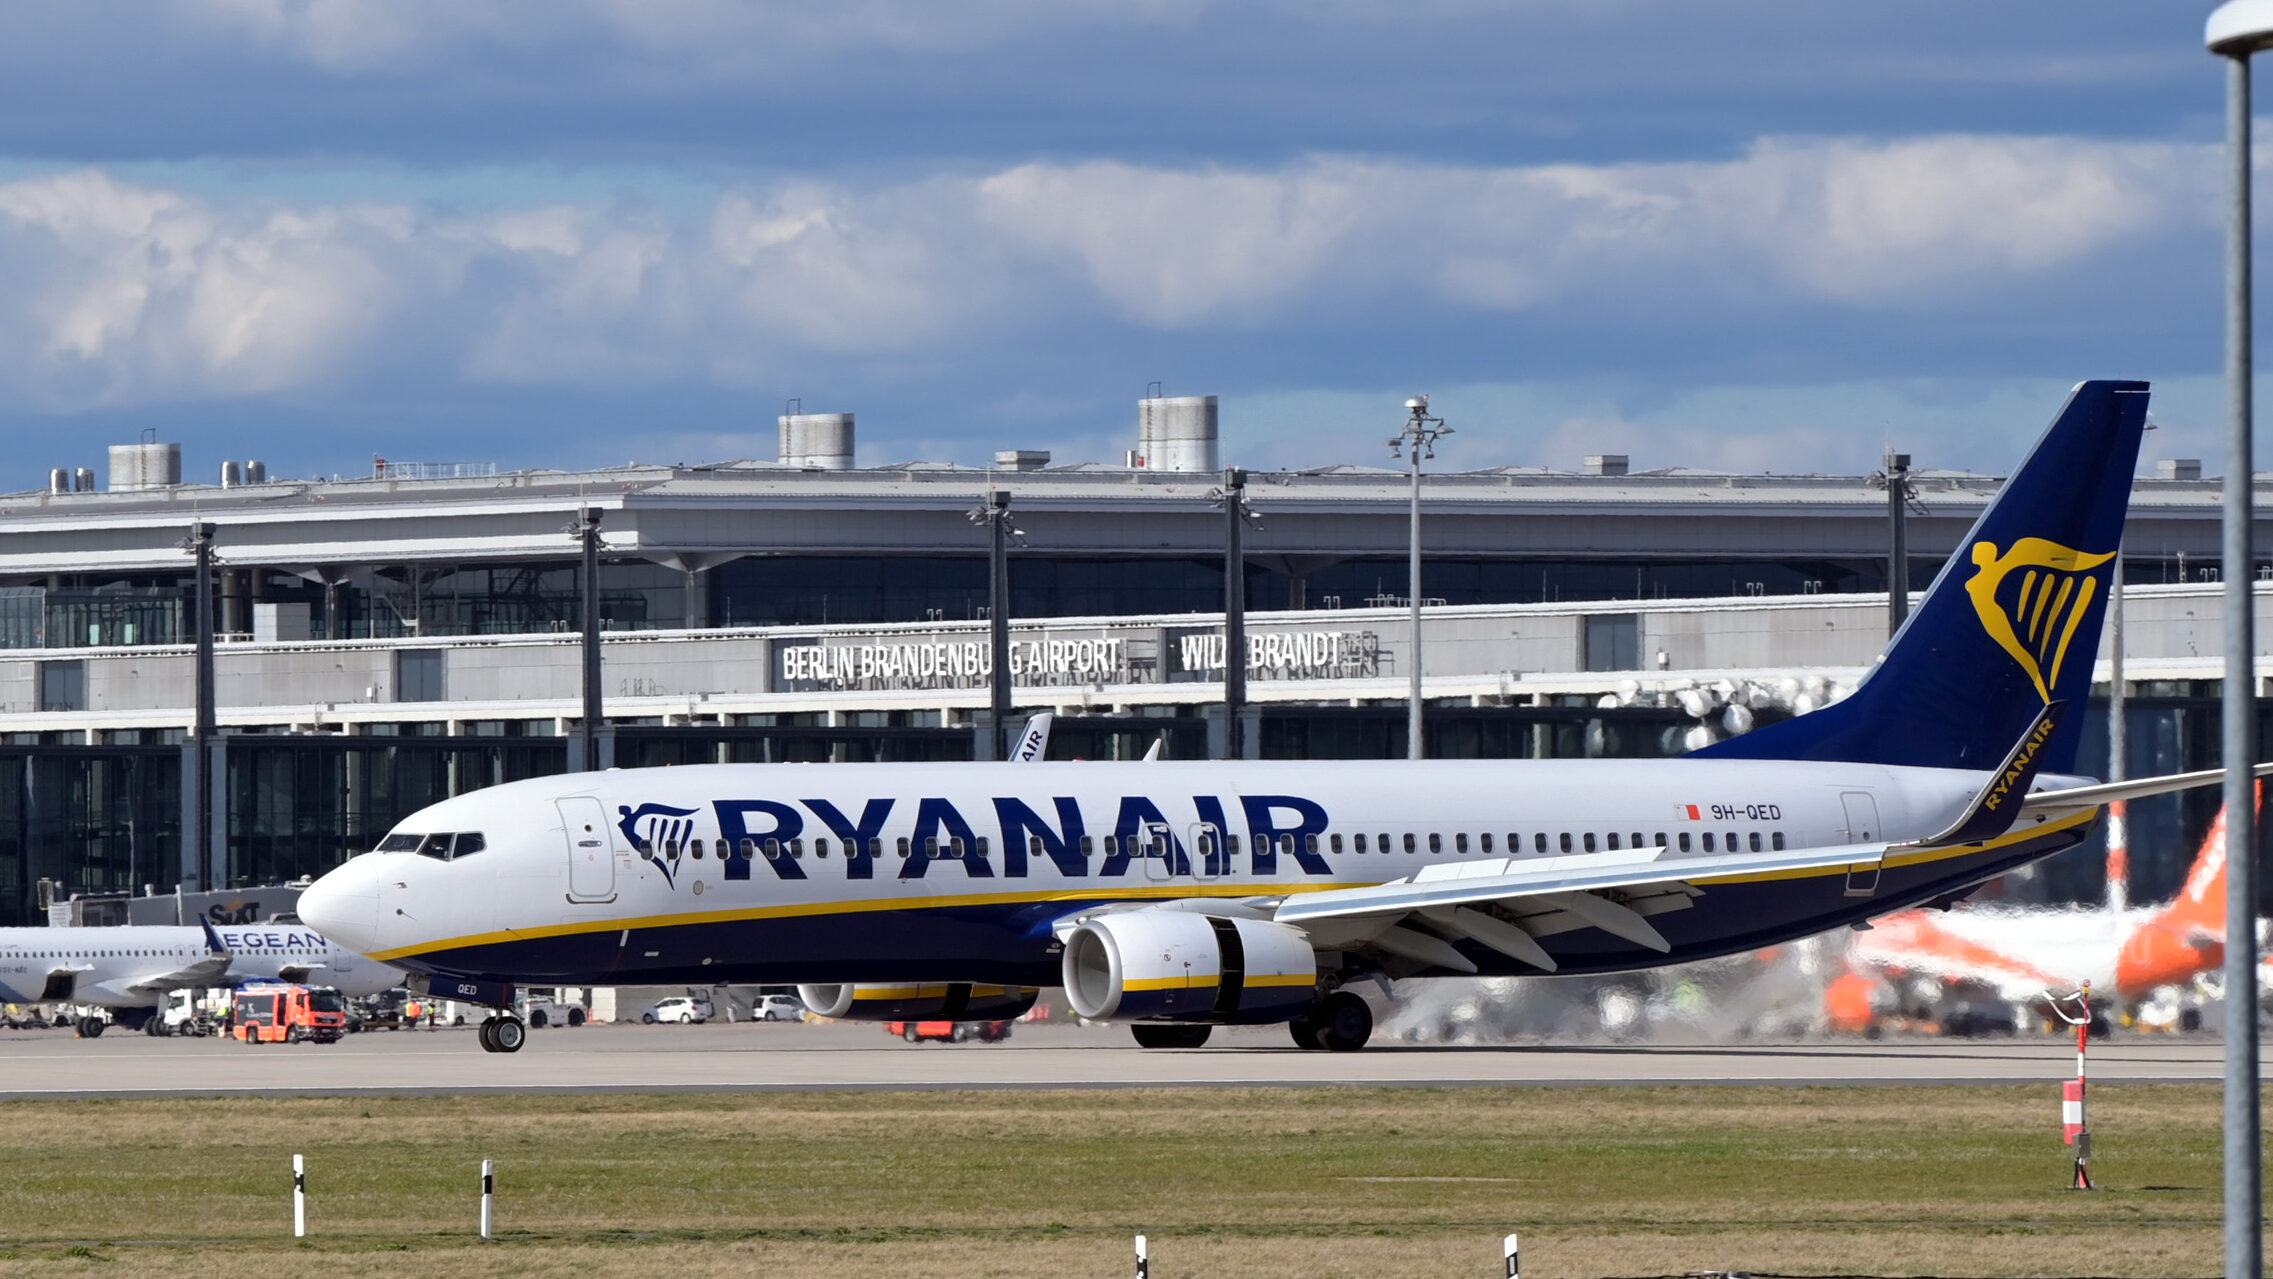 El Tribunal Supremo confirma la nulidad del ERTE de Ryanair en Canarias y Gerona